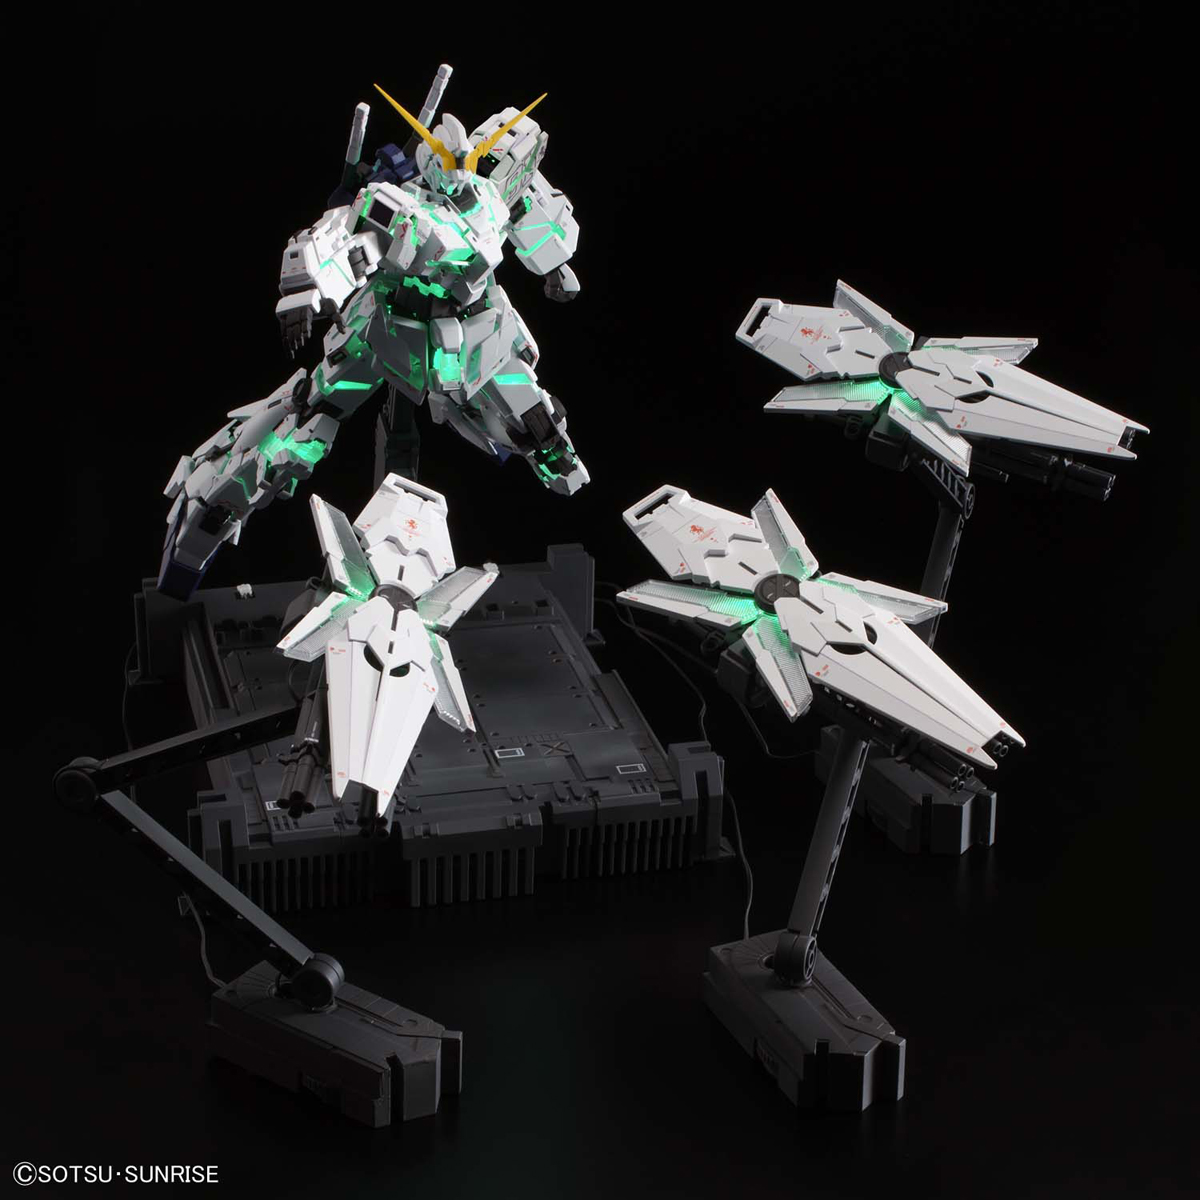 MGEX Unicorn Gundam Ver. Ka (Premium “Unicorn Mode” Box)